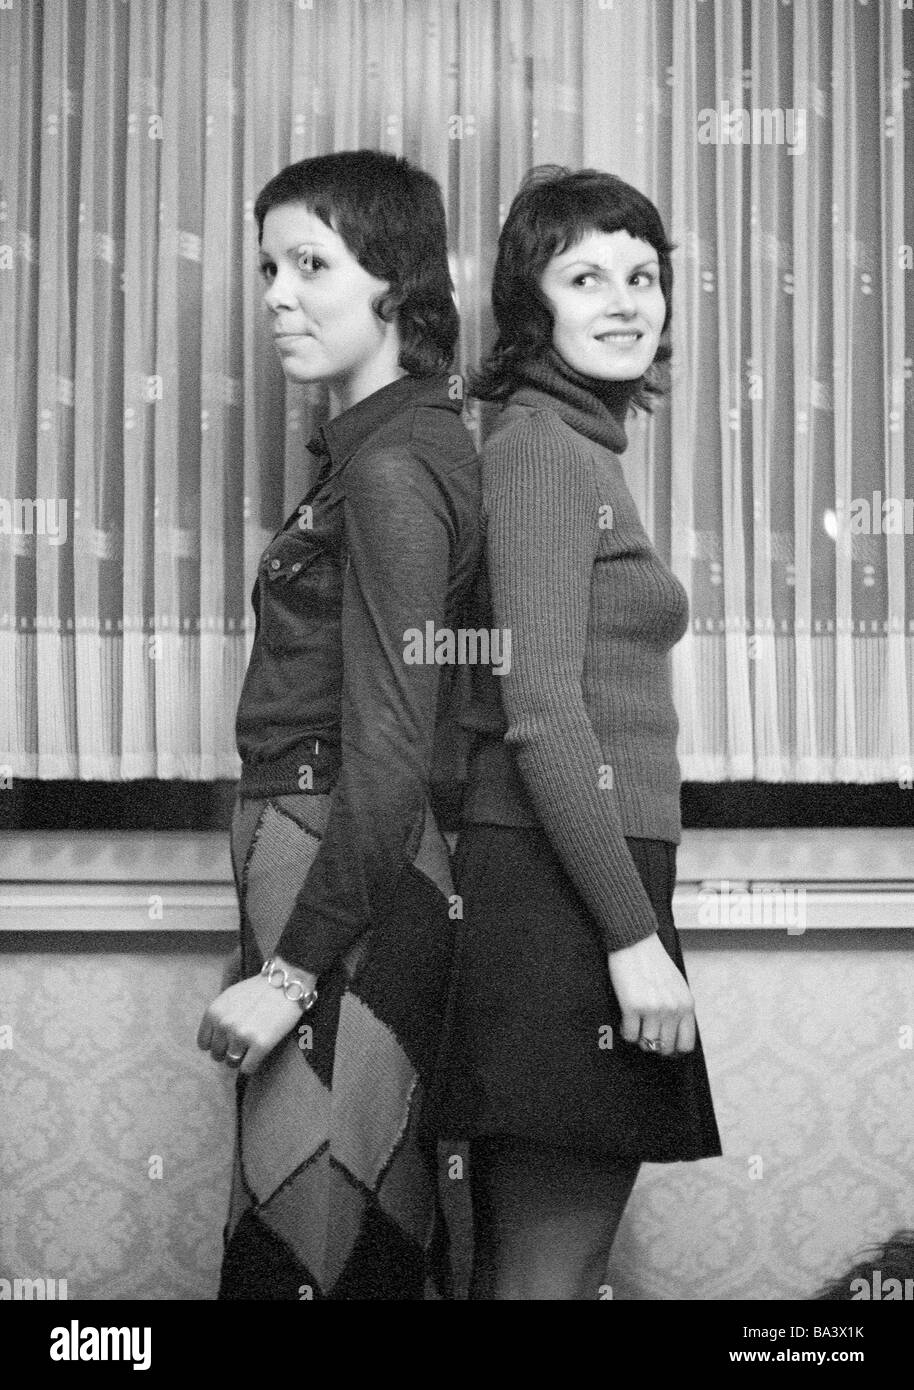 Années 70, photo en noir et blanc, les gens, les deux jeunes filles se tenir dos à dos contrôler leur hauteur de corps, blouse, jupe, minijupe, Gaby, Gabi, âgés de 18 à 22 ans Banque D'Images